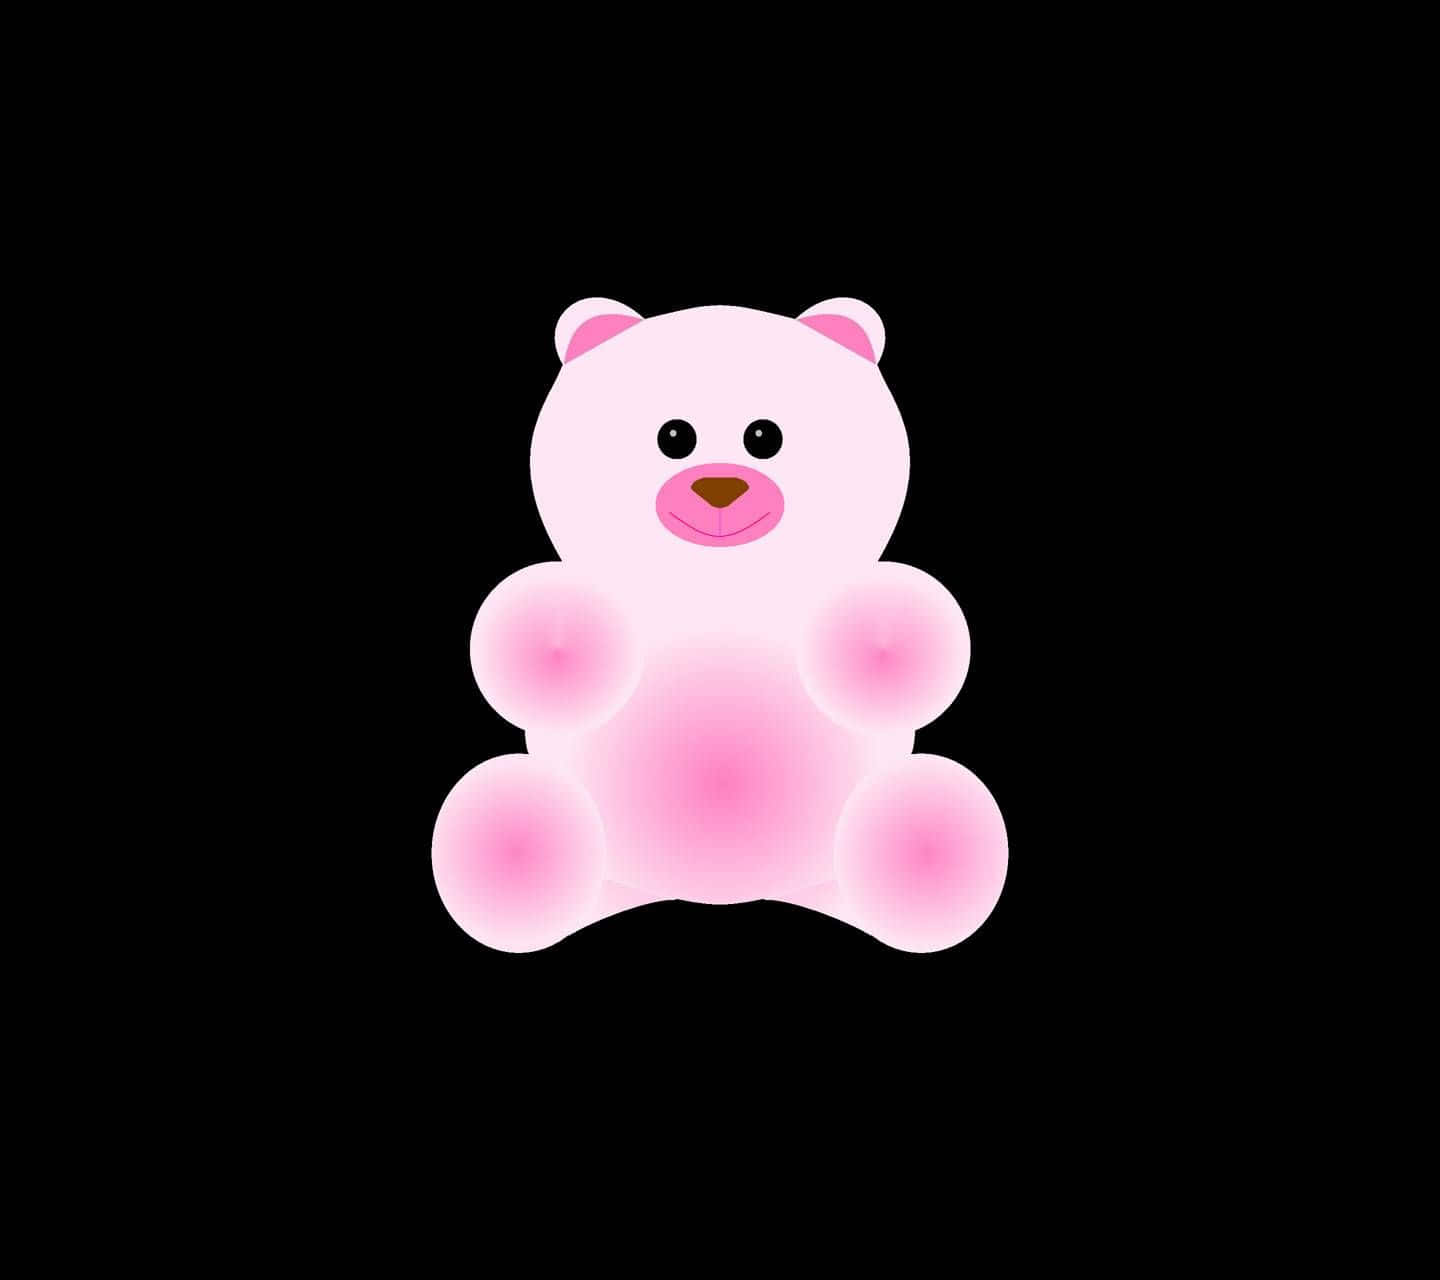 Cute Chubby Pink Teddy Bear